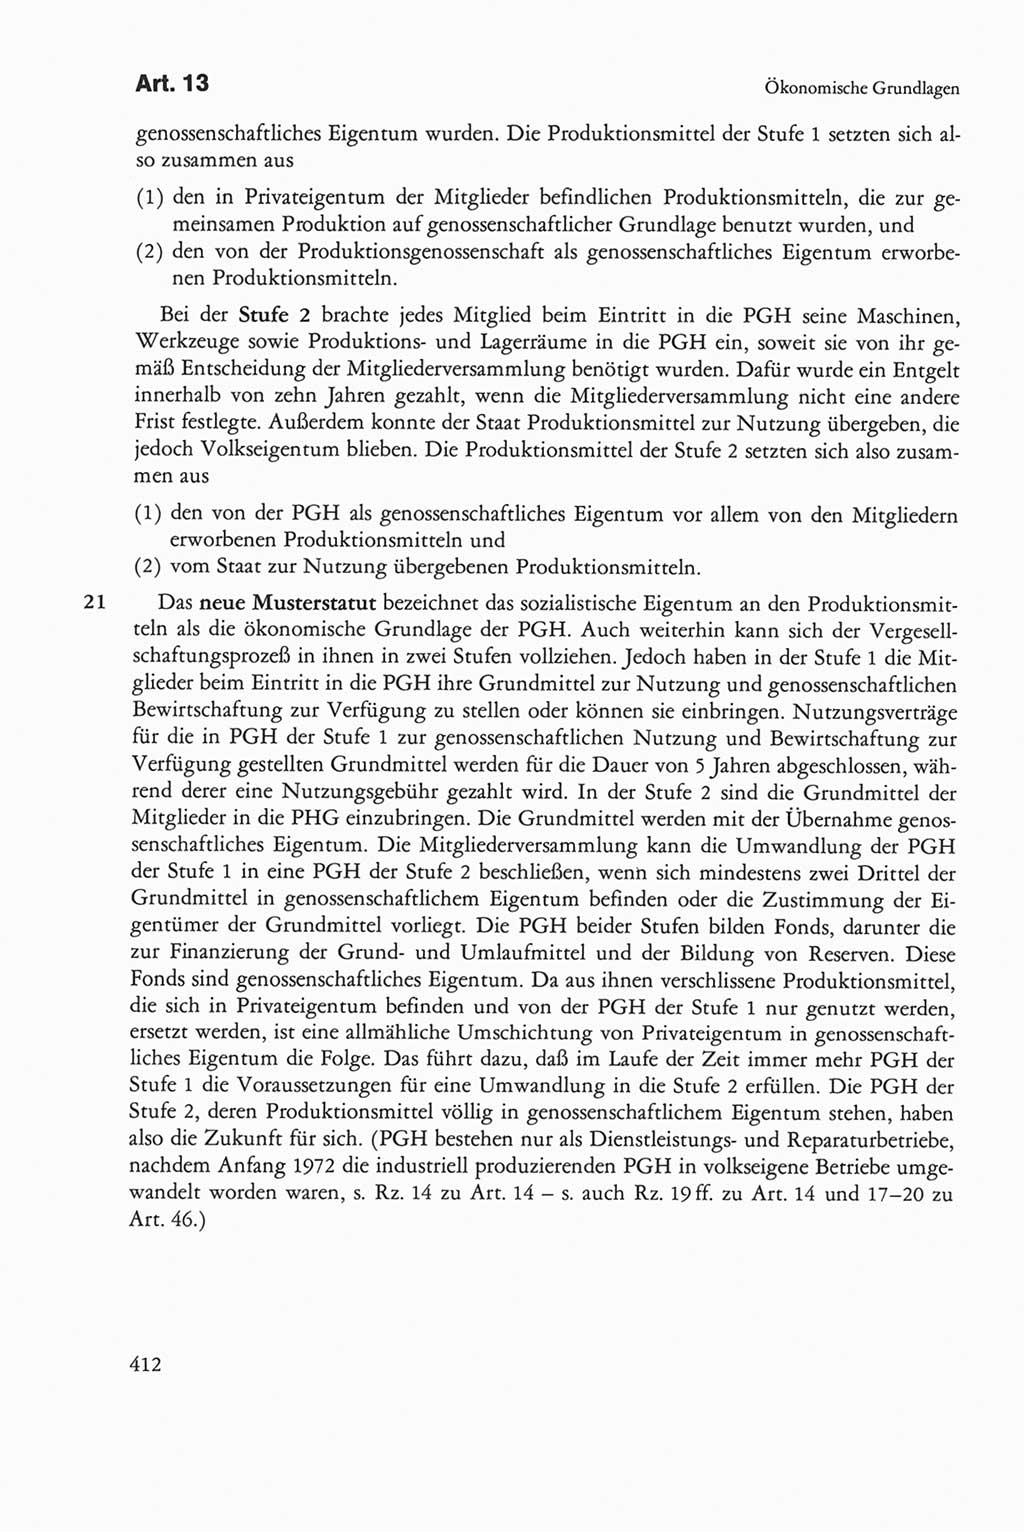 Die sozialistische Verfassung der Deutschen Demokratischen Republik (DDR), Kommentar mit einem Nachtrag 1997, Seite 412 (Soz. Verf. DDR Komm. Nachtr. 1997, S. 412)